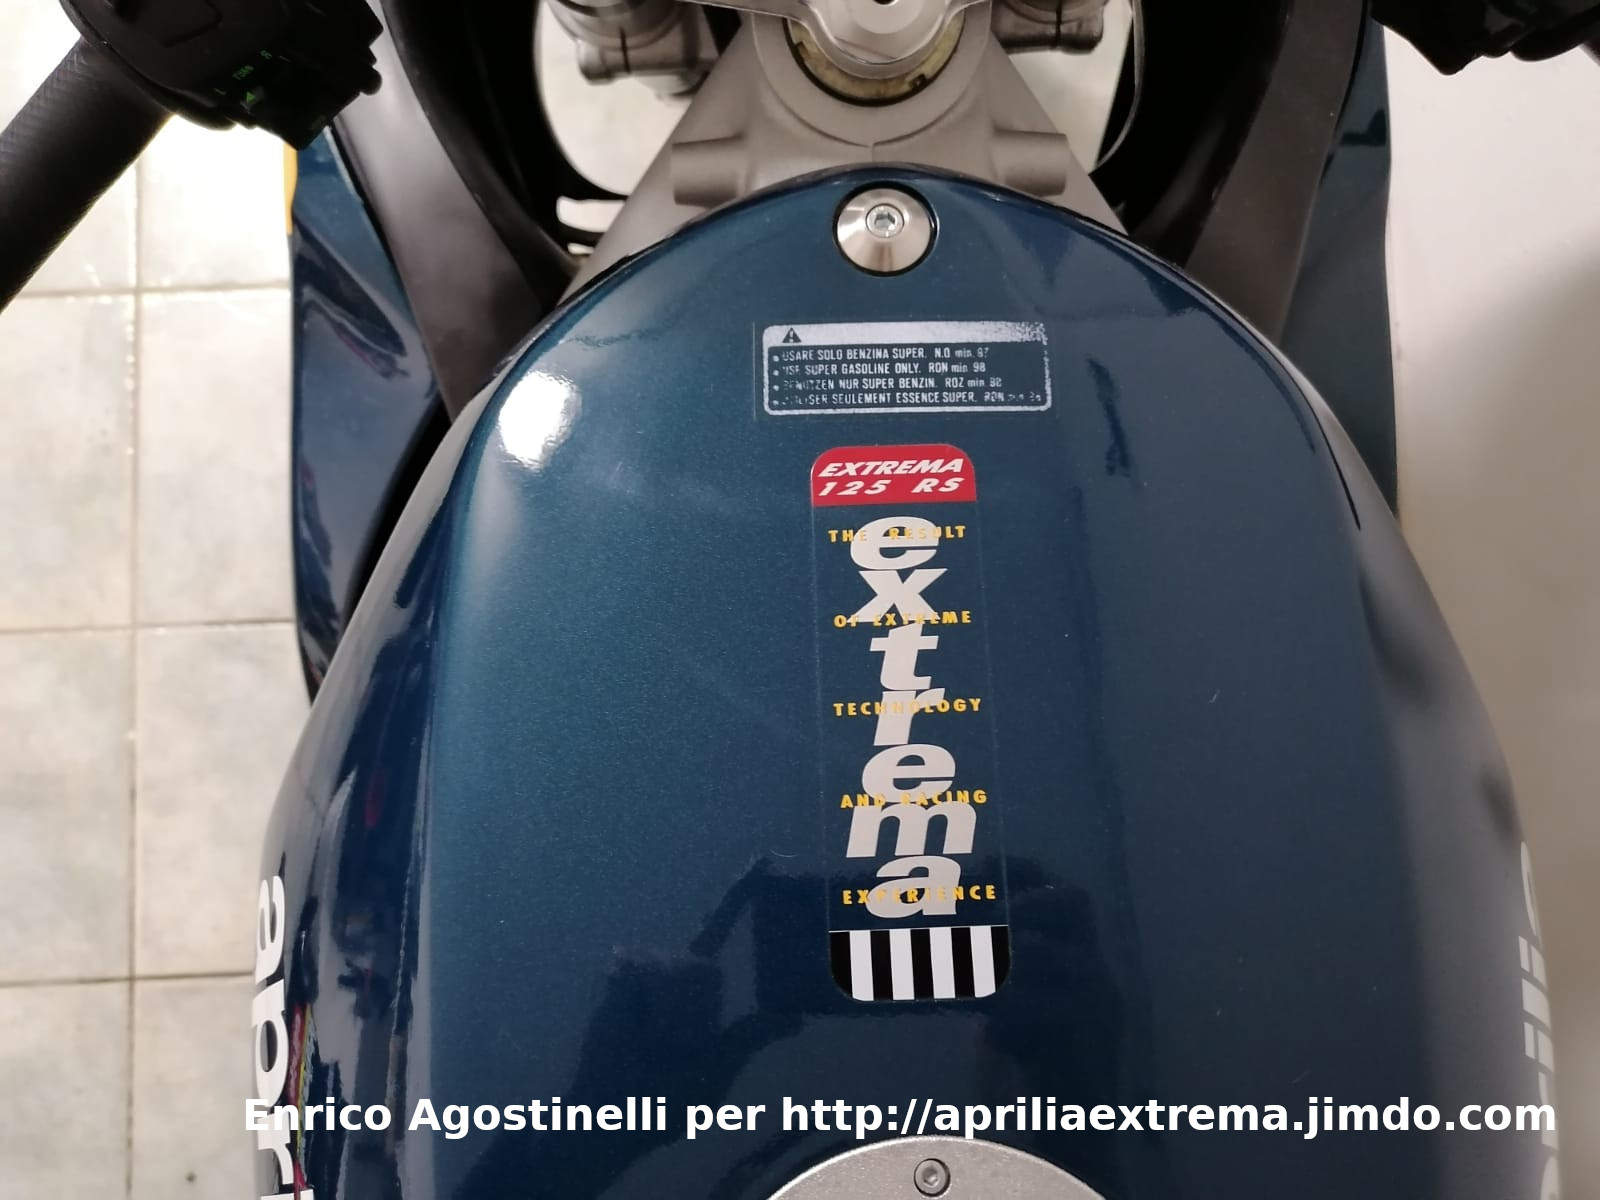 La extrema del 1993: adesivo sul serbatoio delle moto in colorazione "blu petrolio"